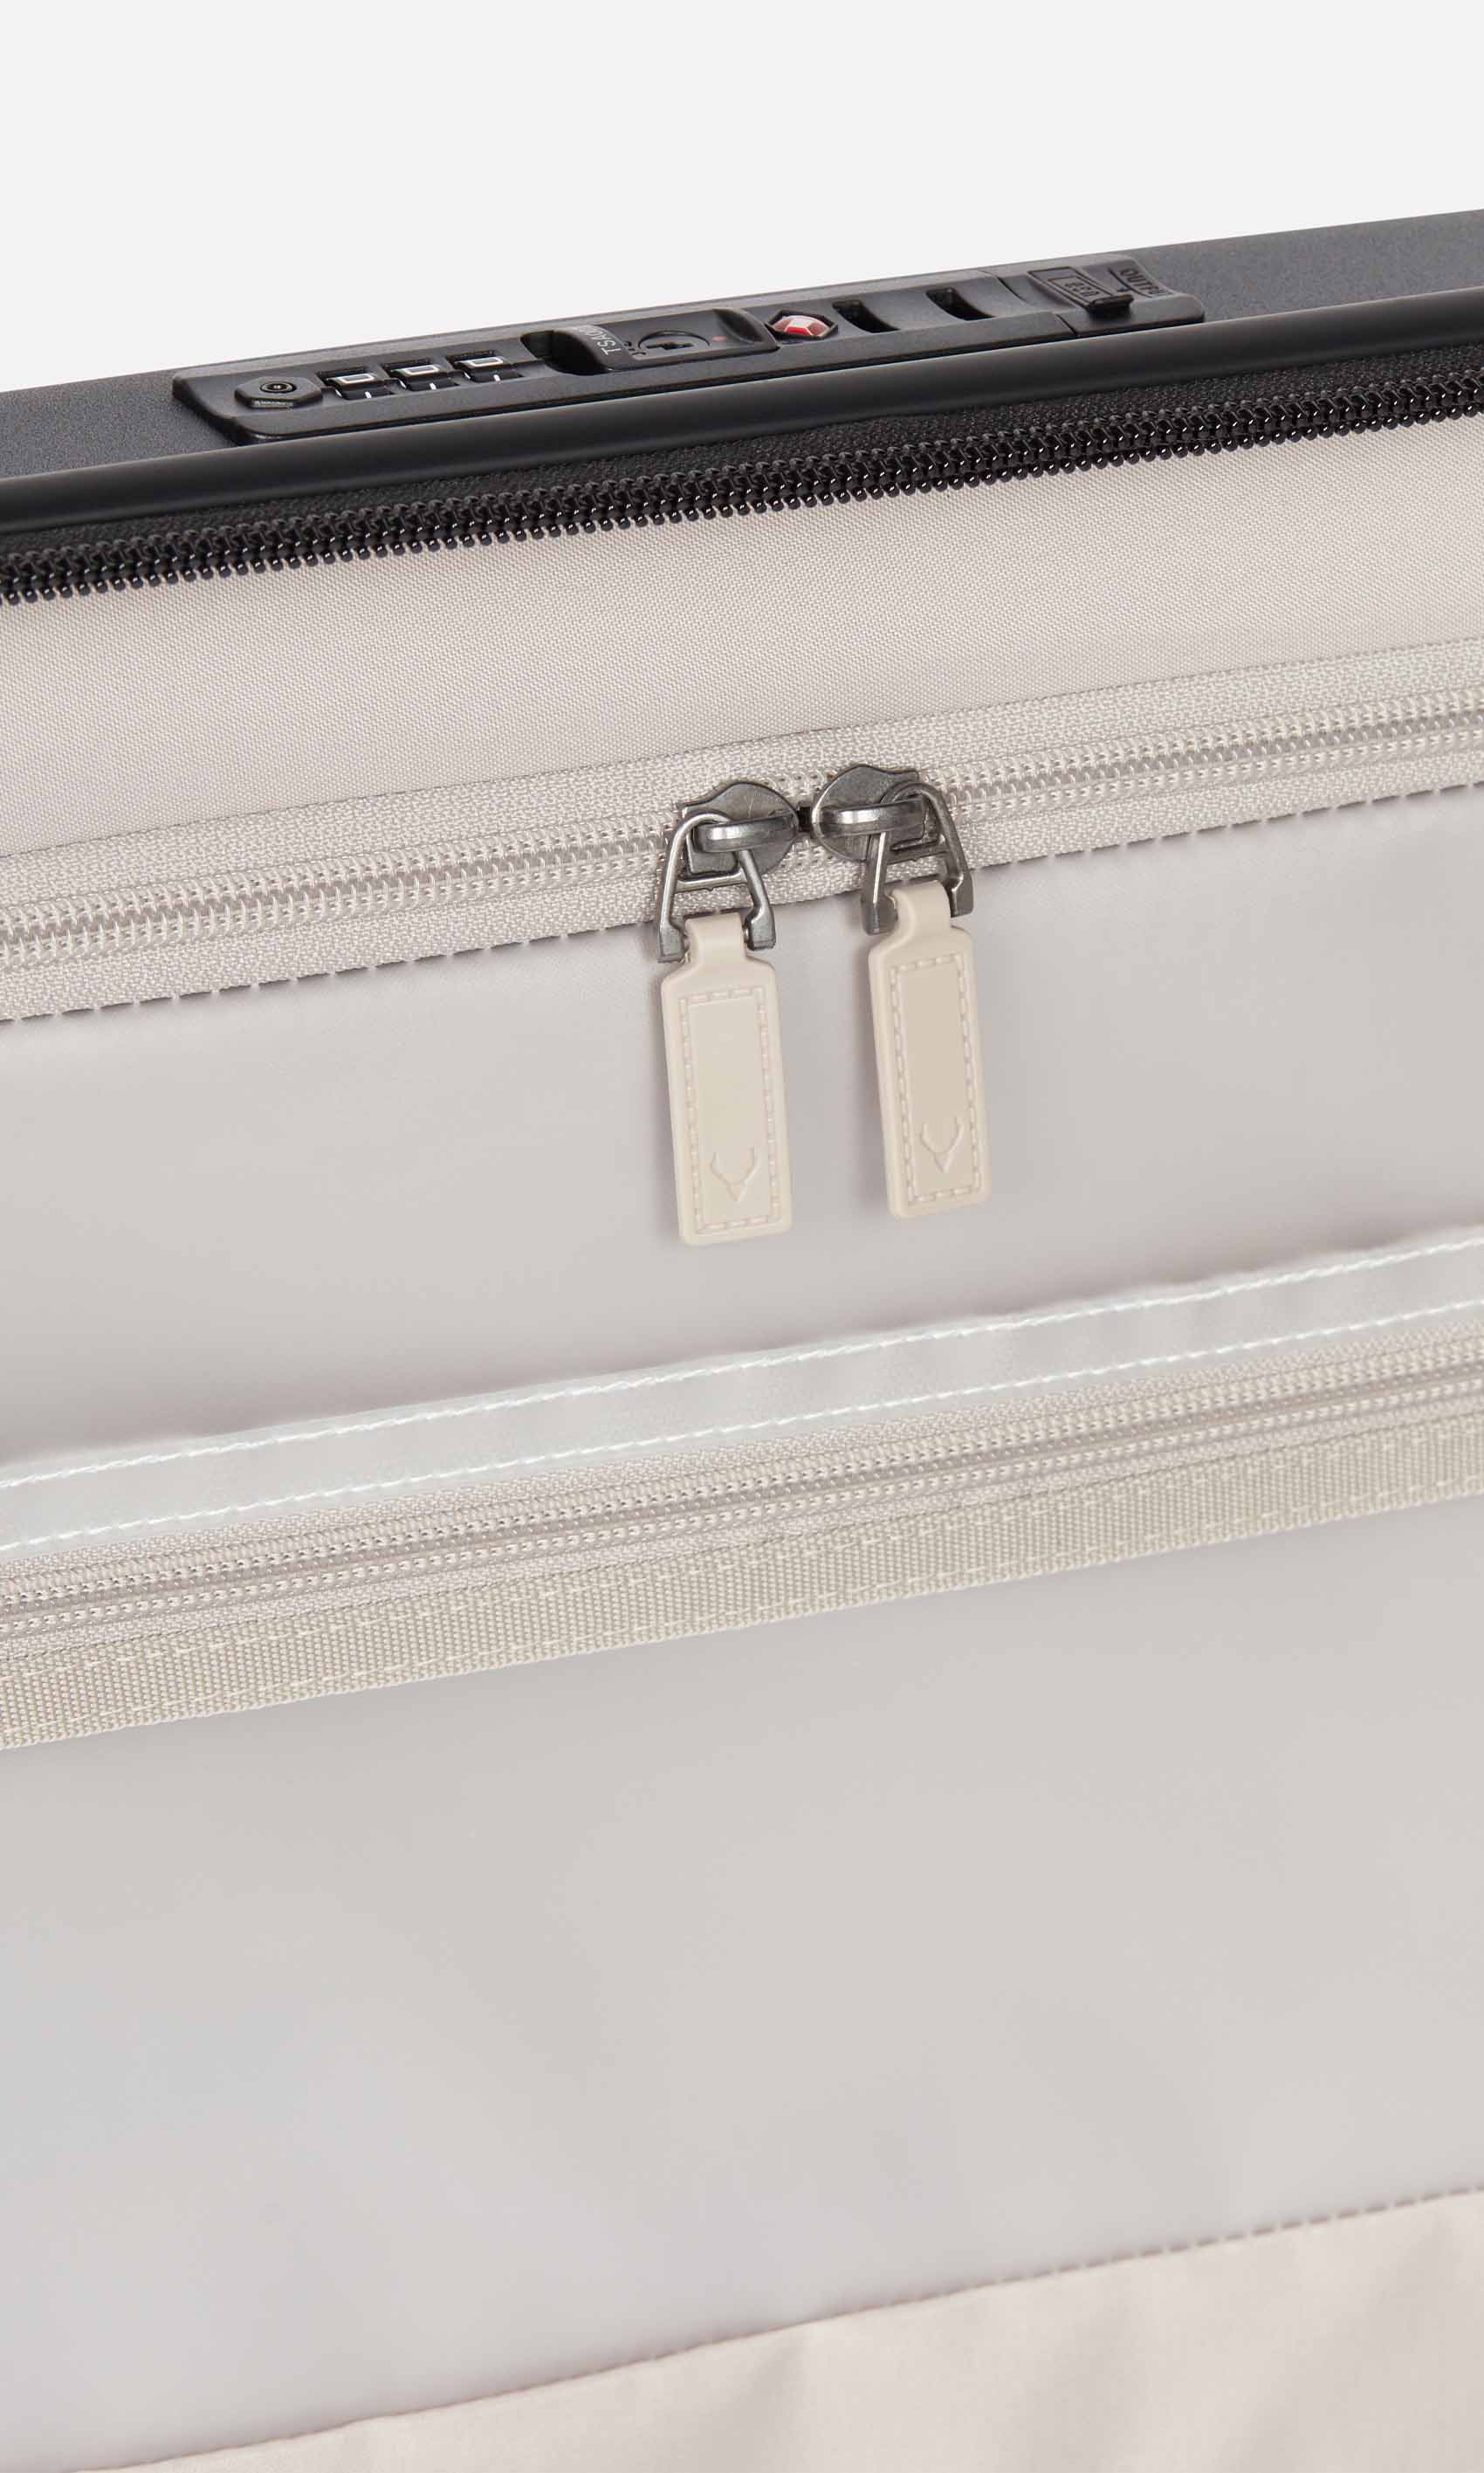 Antler Luggage -  Stamford cabin in black - Hard Suitcases Stamford Cabin Suitcase Black | Hard Luggage | Antler UK